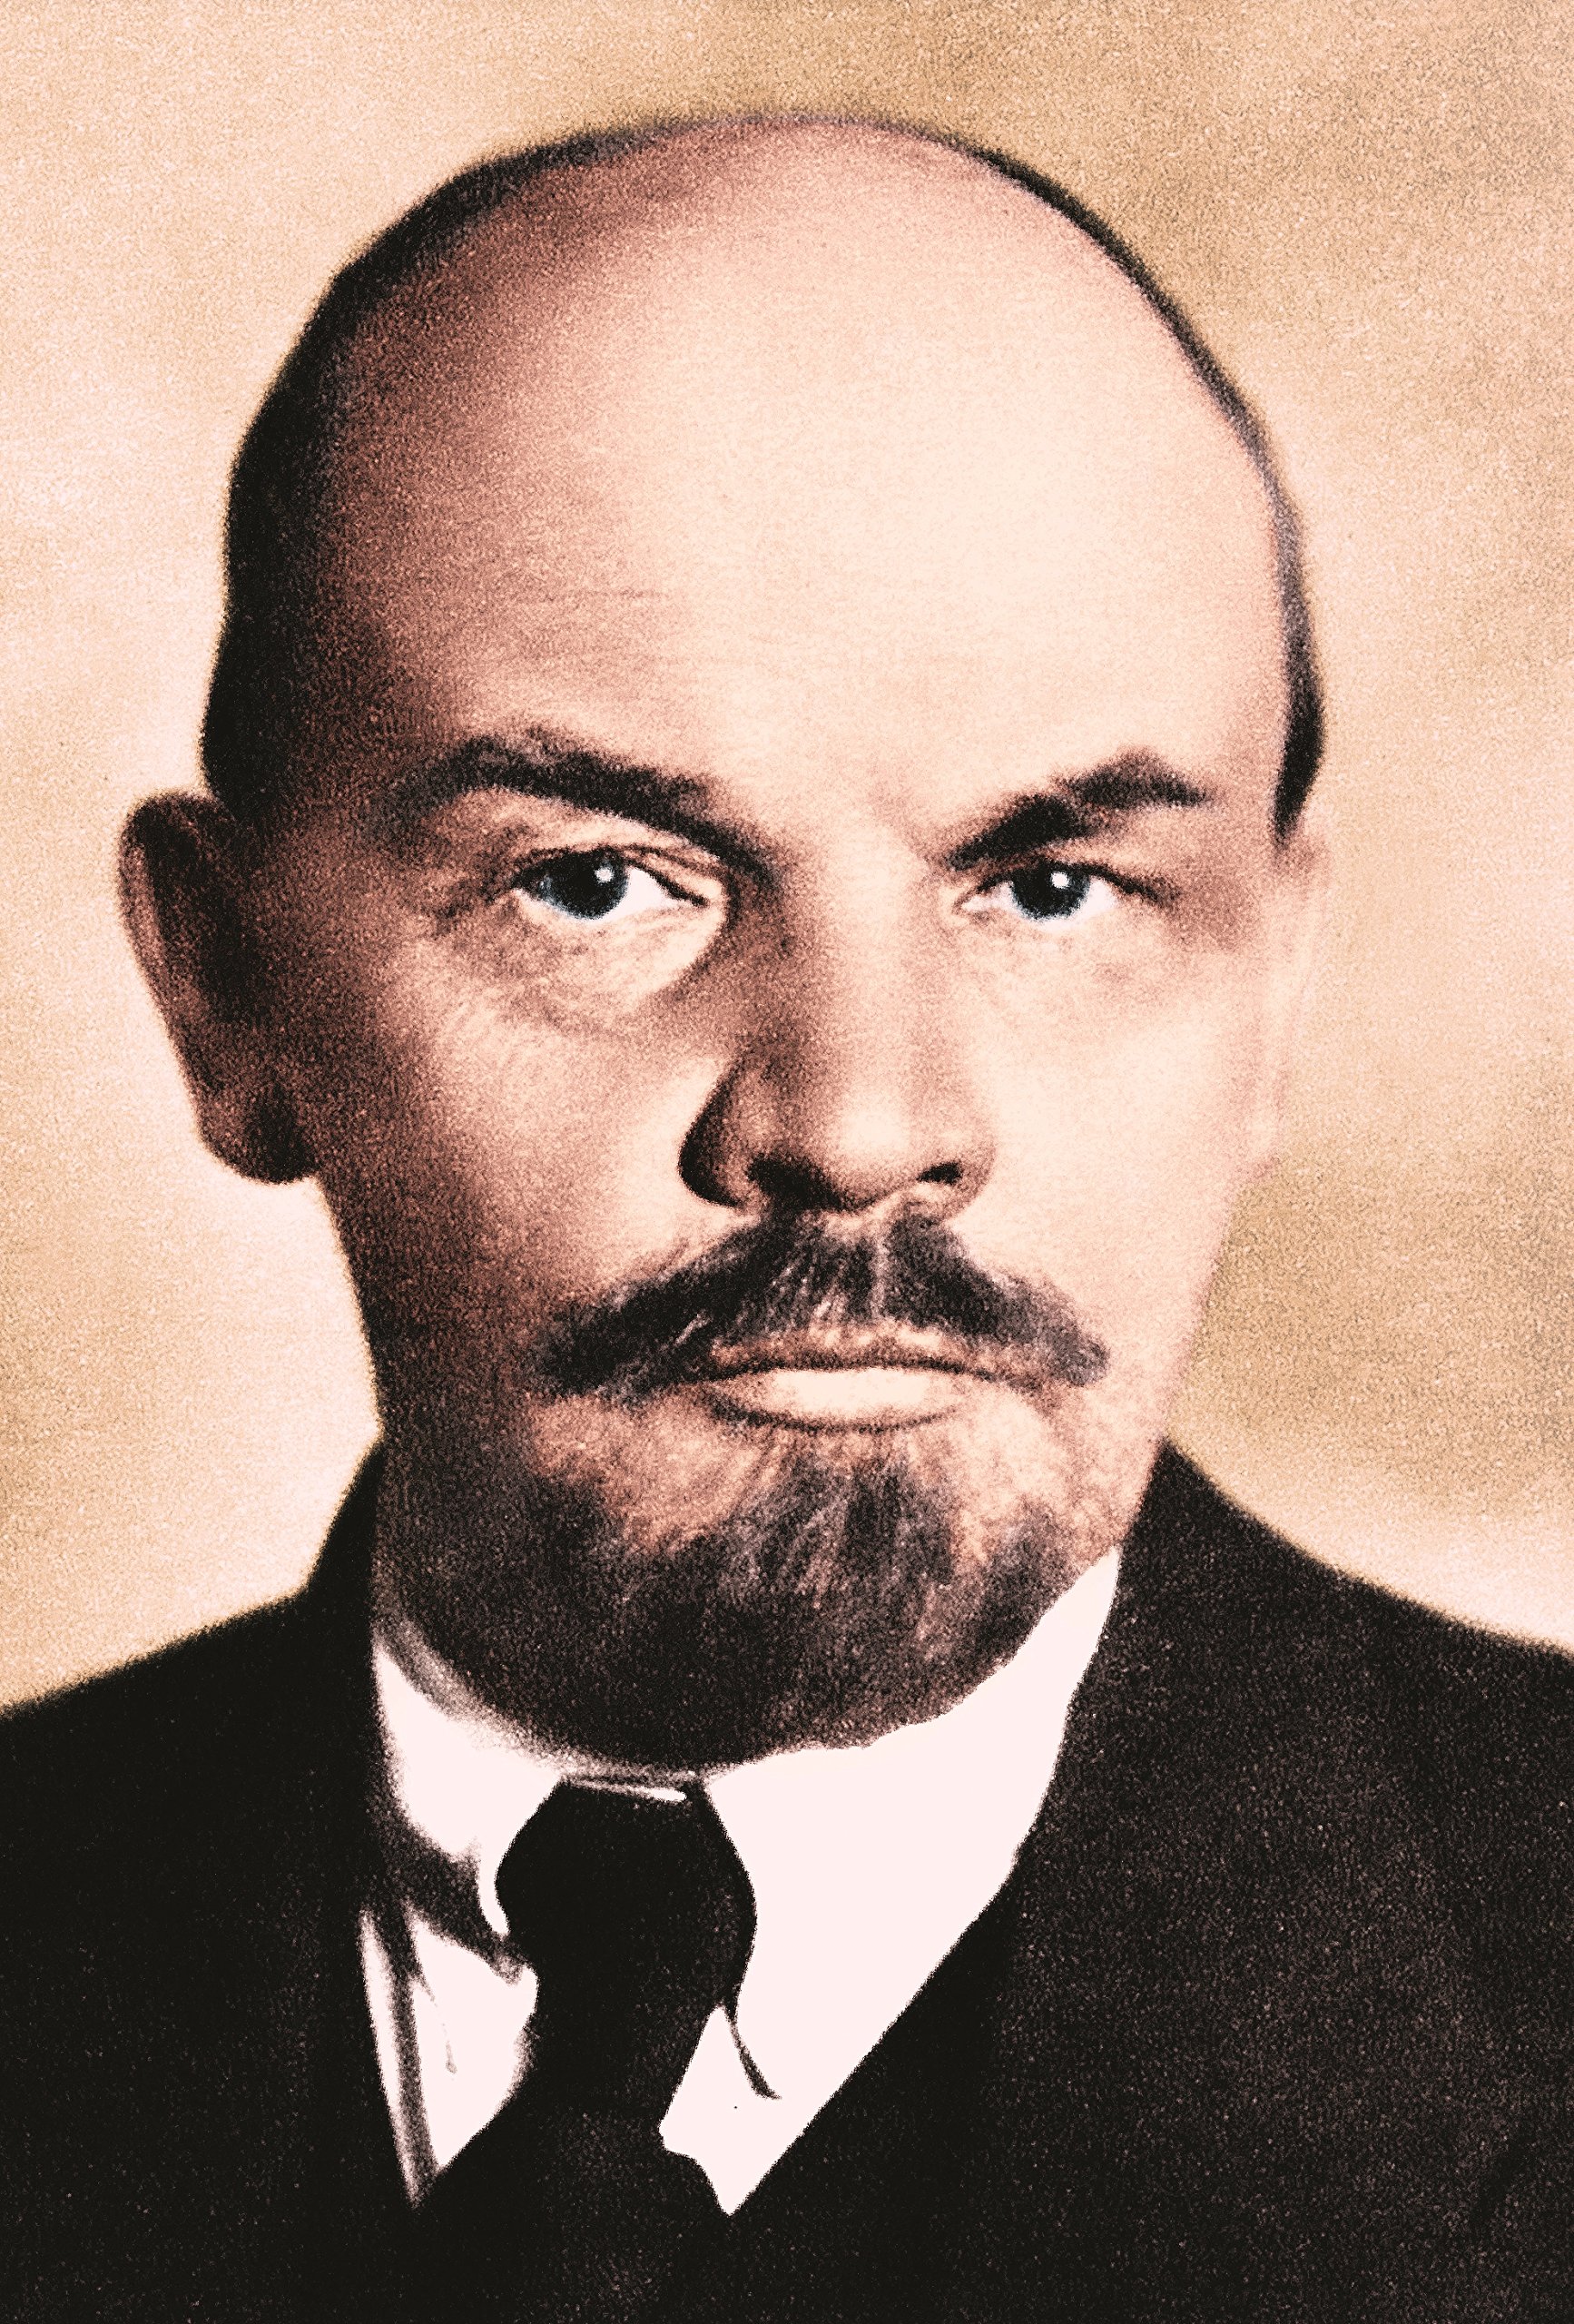 Lenin the Dictator: Amazon.co.uk: Victor Sebestyen: 9781474600446: Books